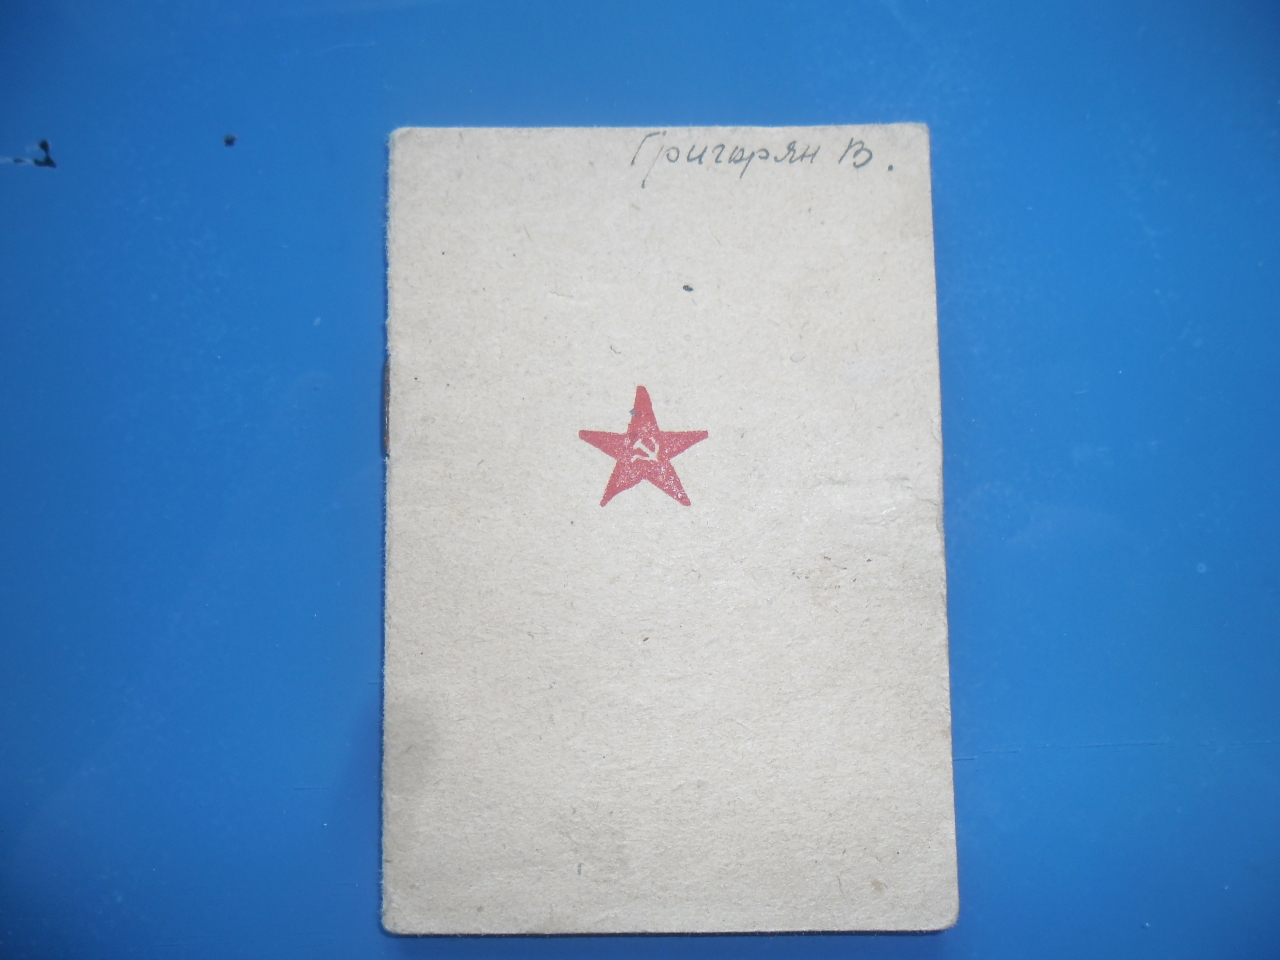 Կարմիրգվարդիականի գրքույկ՝ Վարդգես Վաղարշակի Գրիգորյանի (Հայրենական պատերազմի մասնակից)